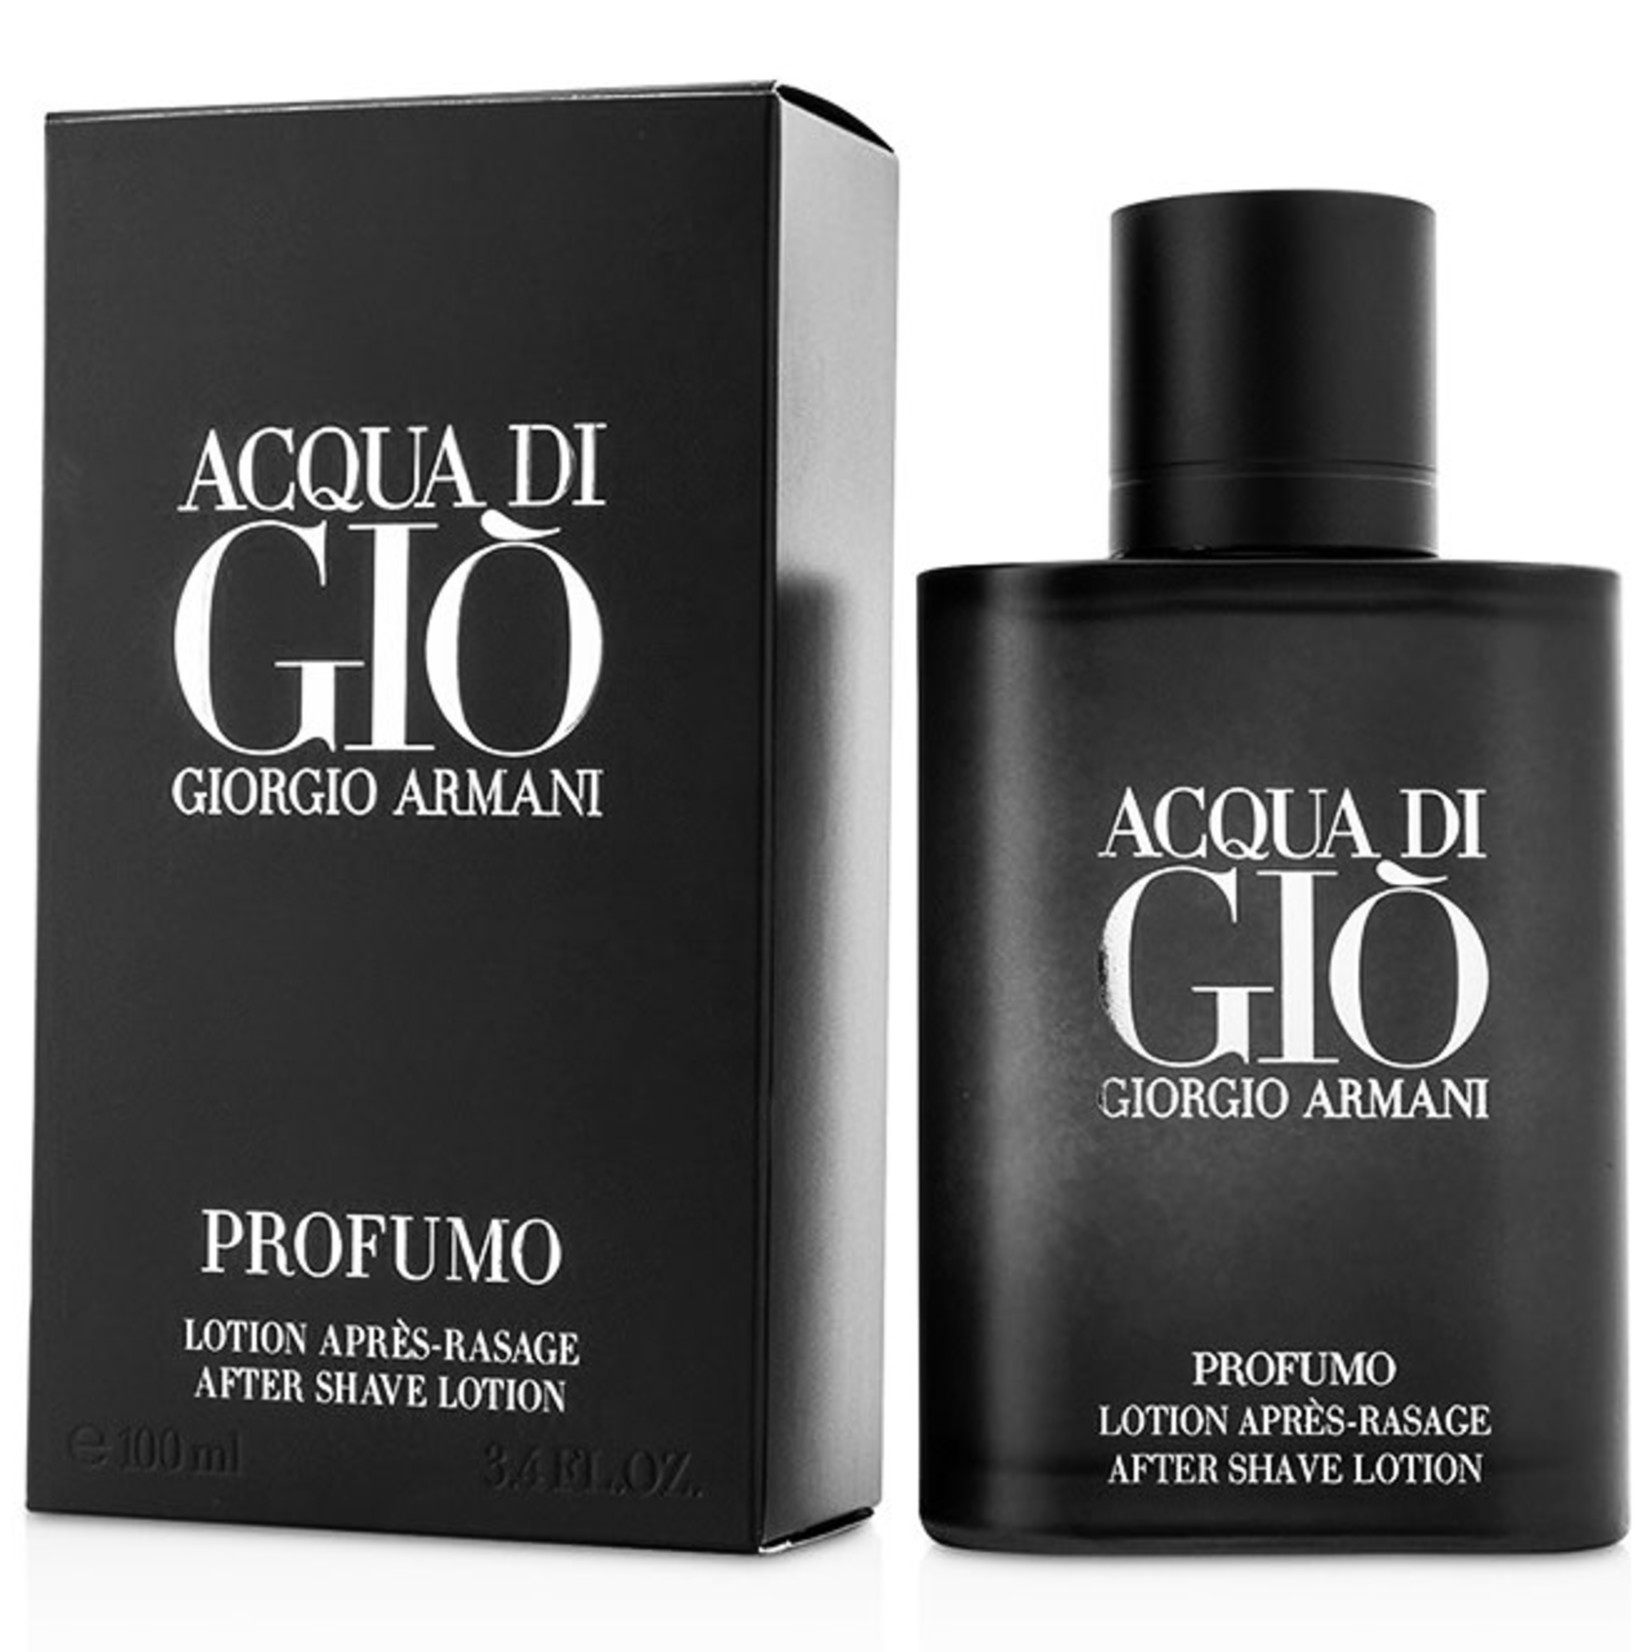 Giorgio Armani Acqua Di Gio Profumo After Shave Lotion